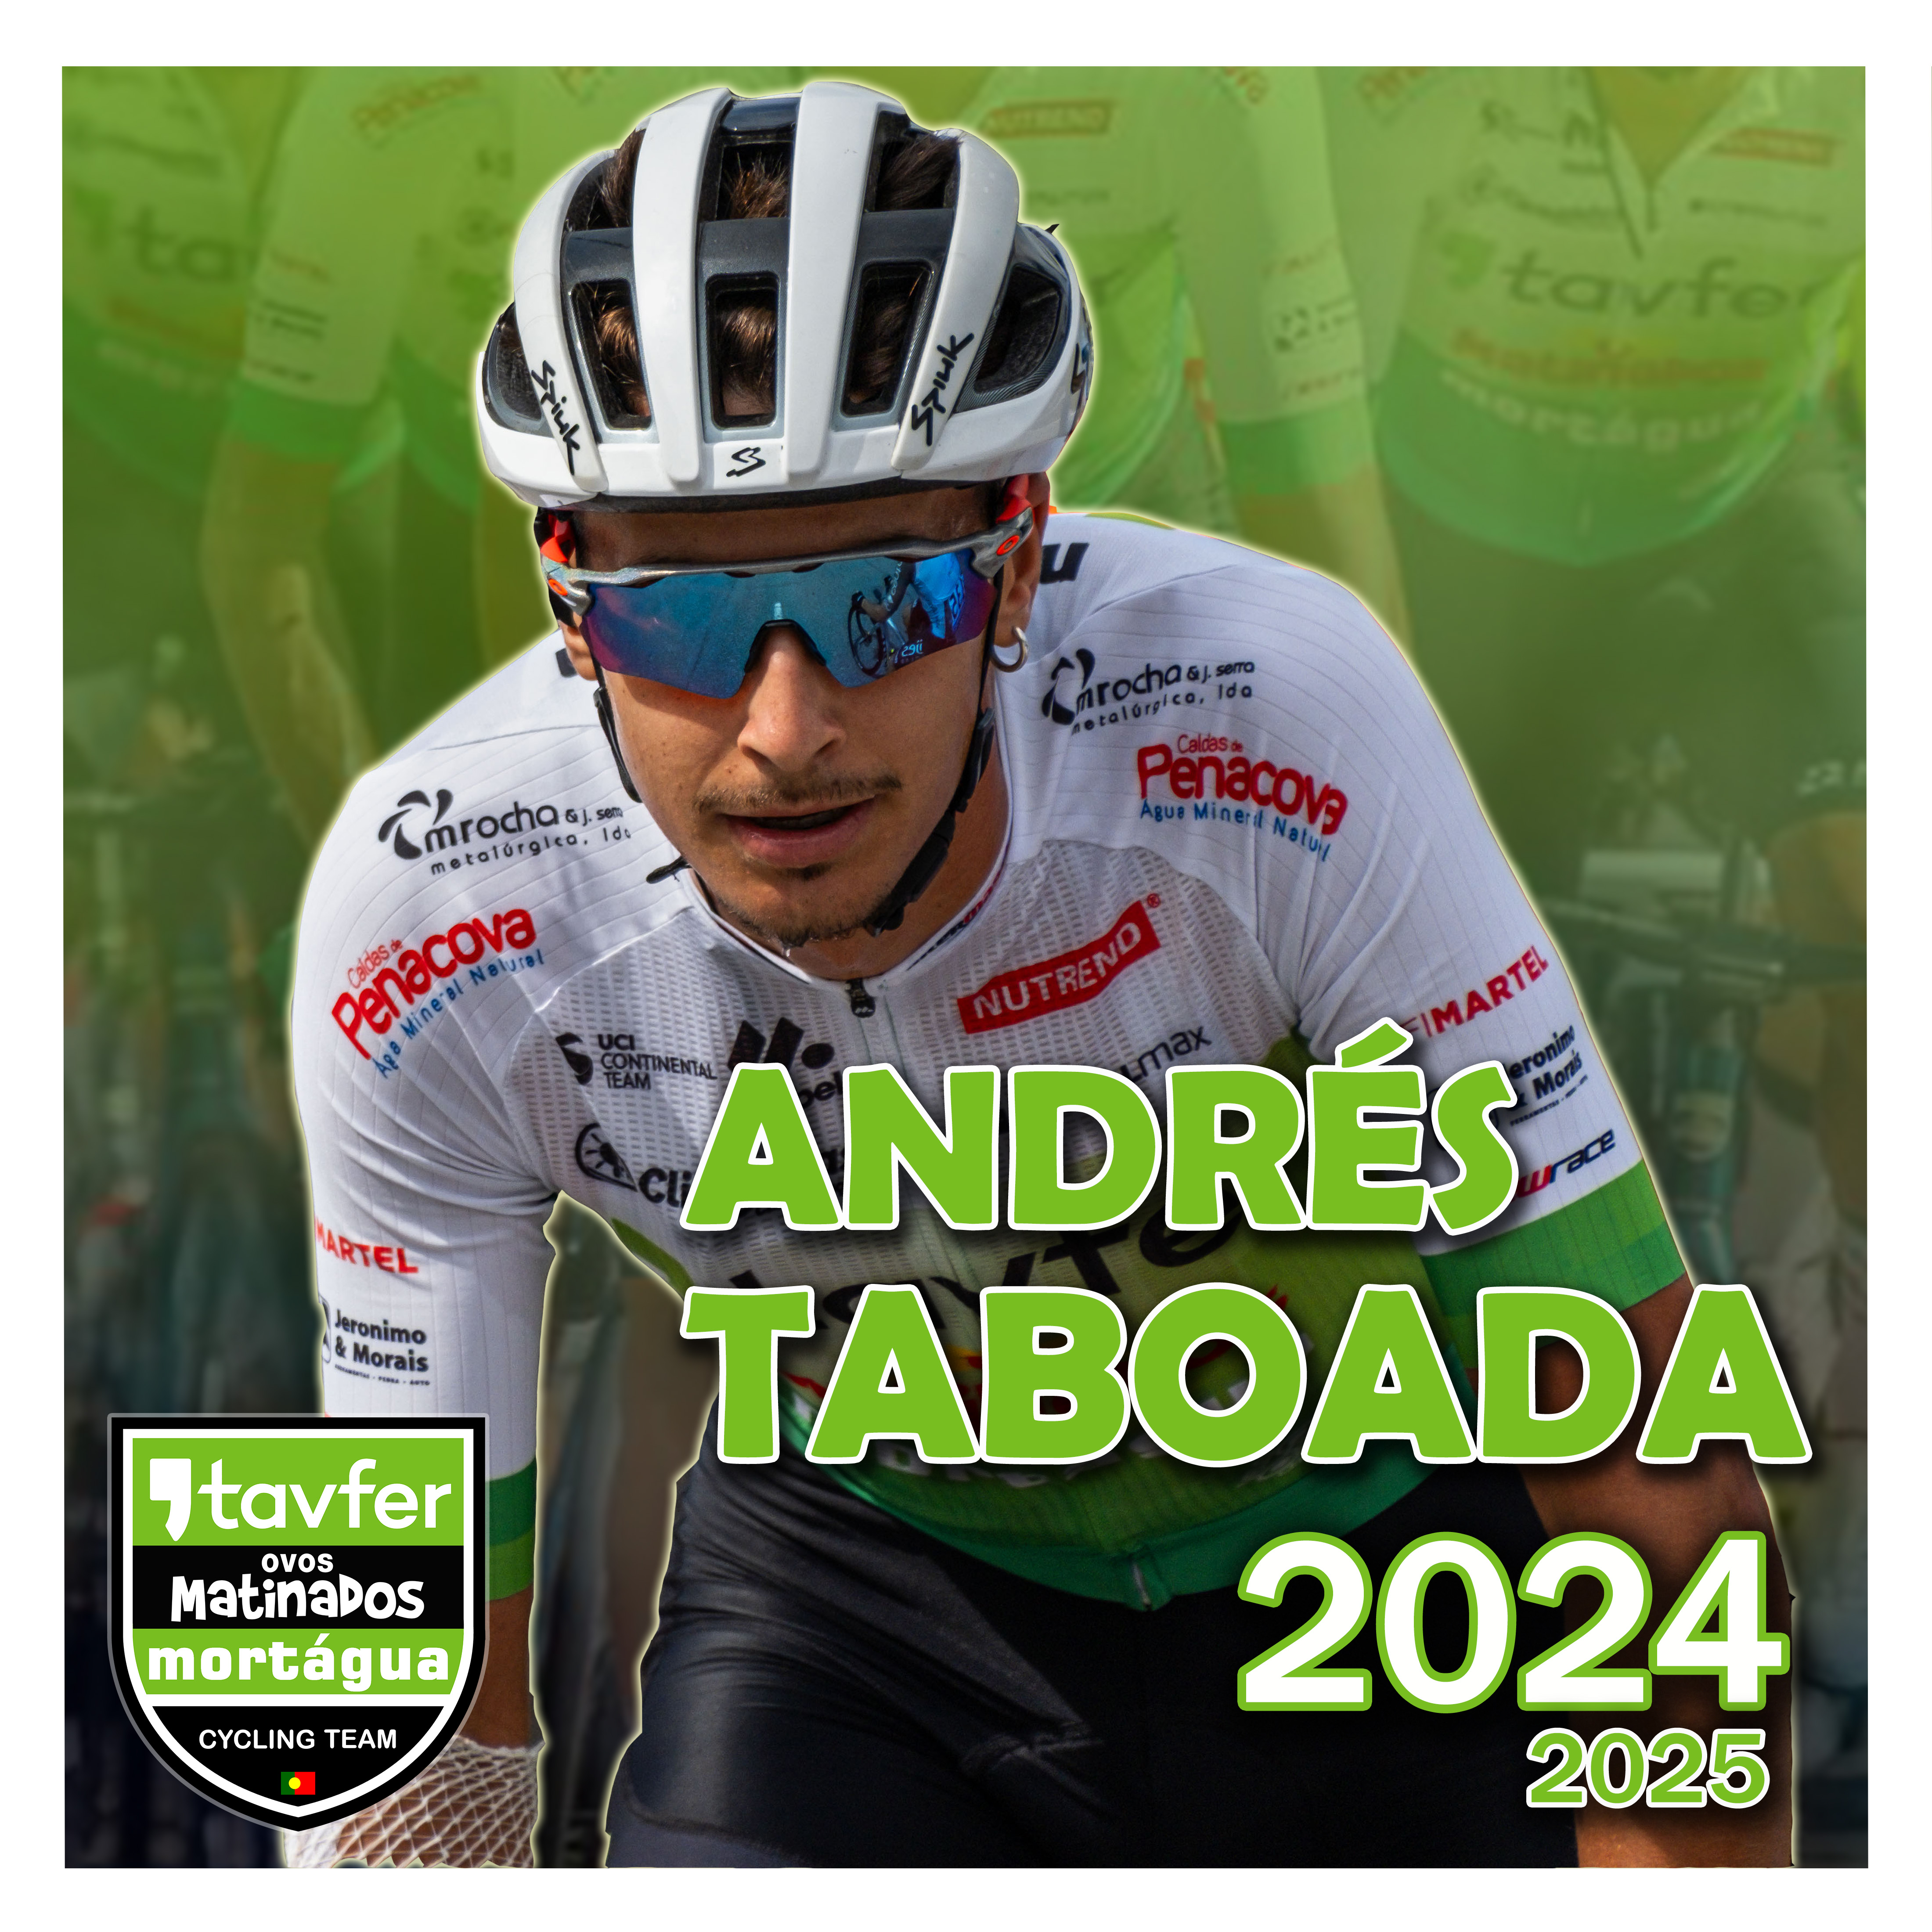 andres-taboada-2024